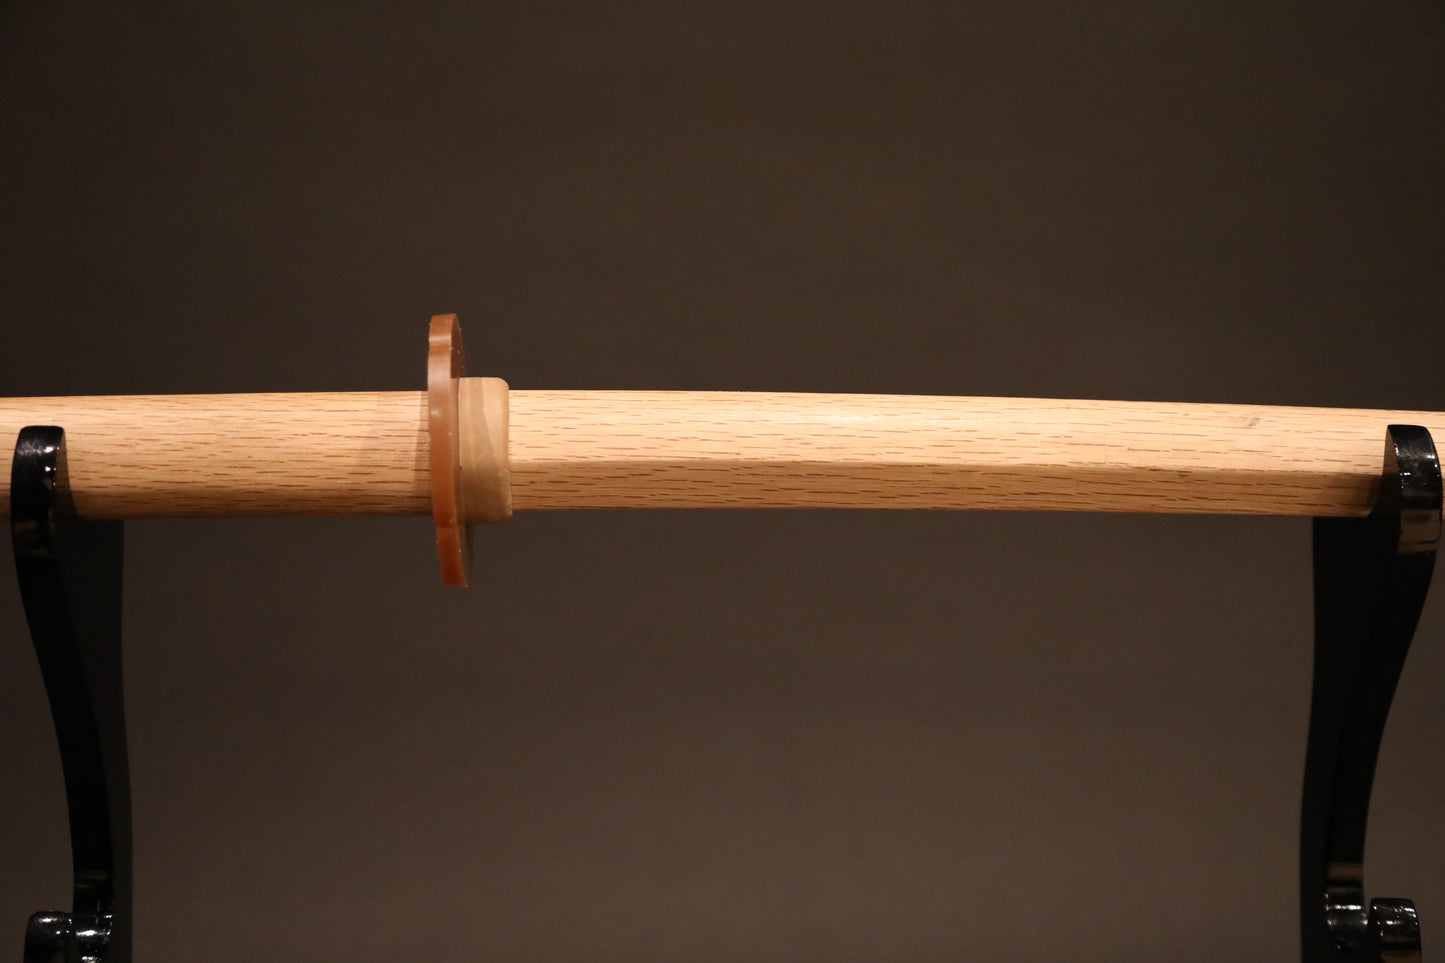 Wooden Training Sword "BOKKEN"